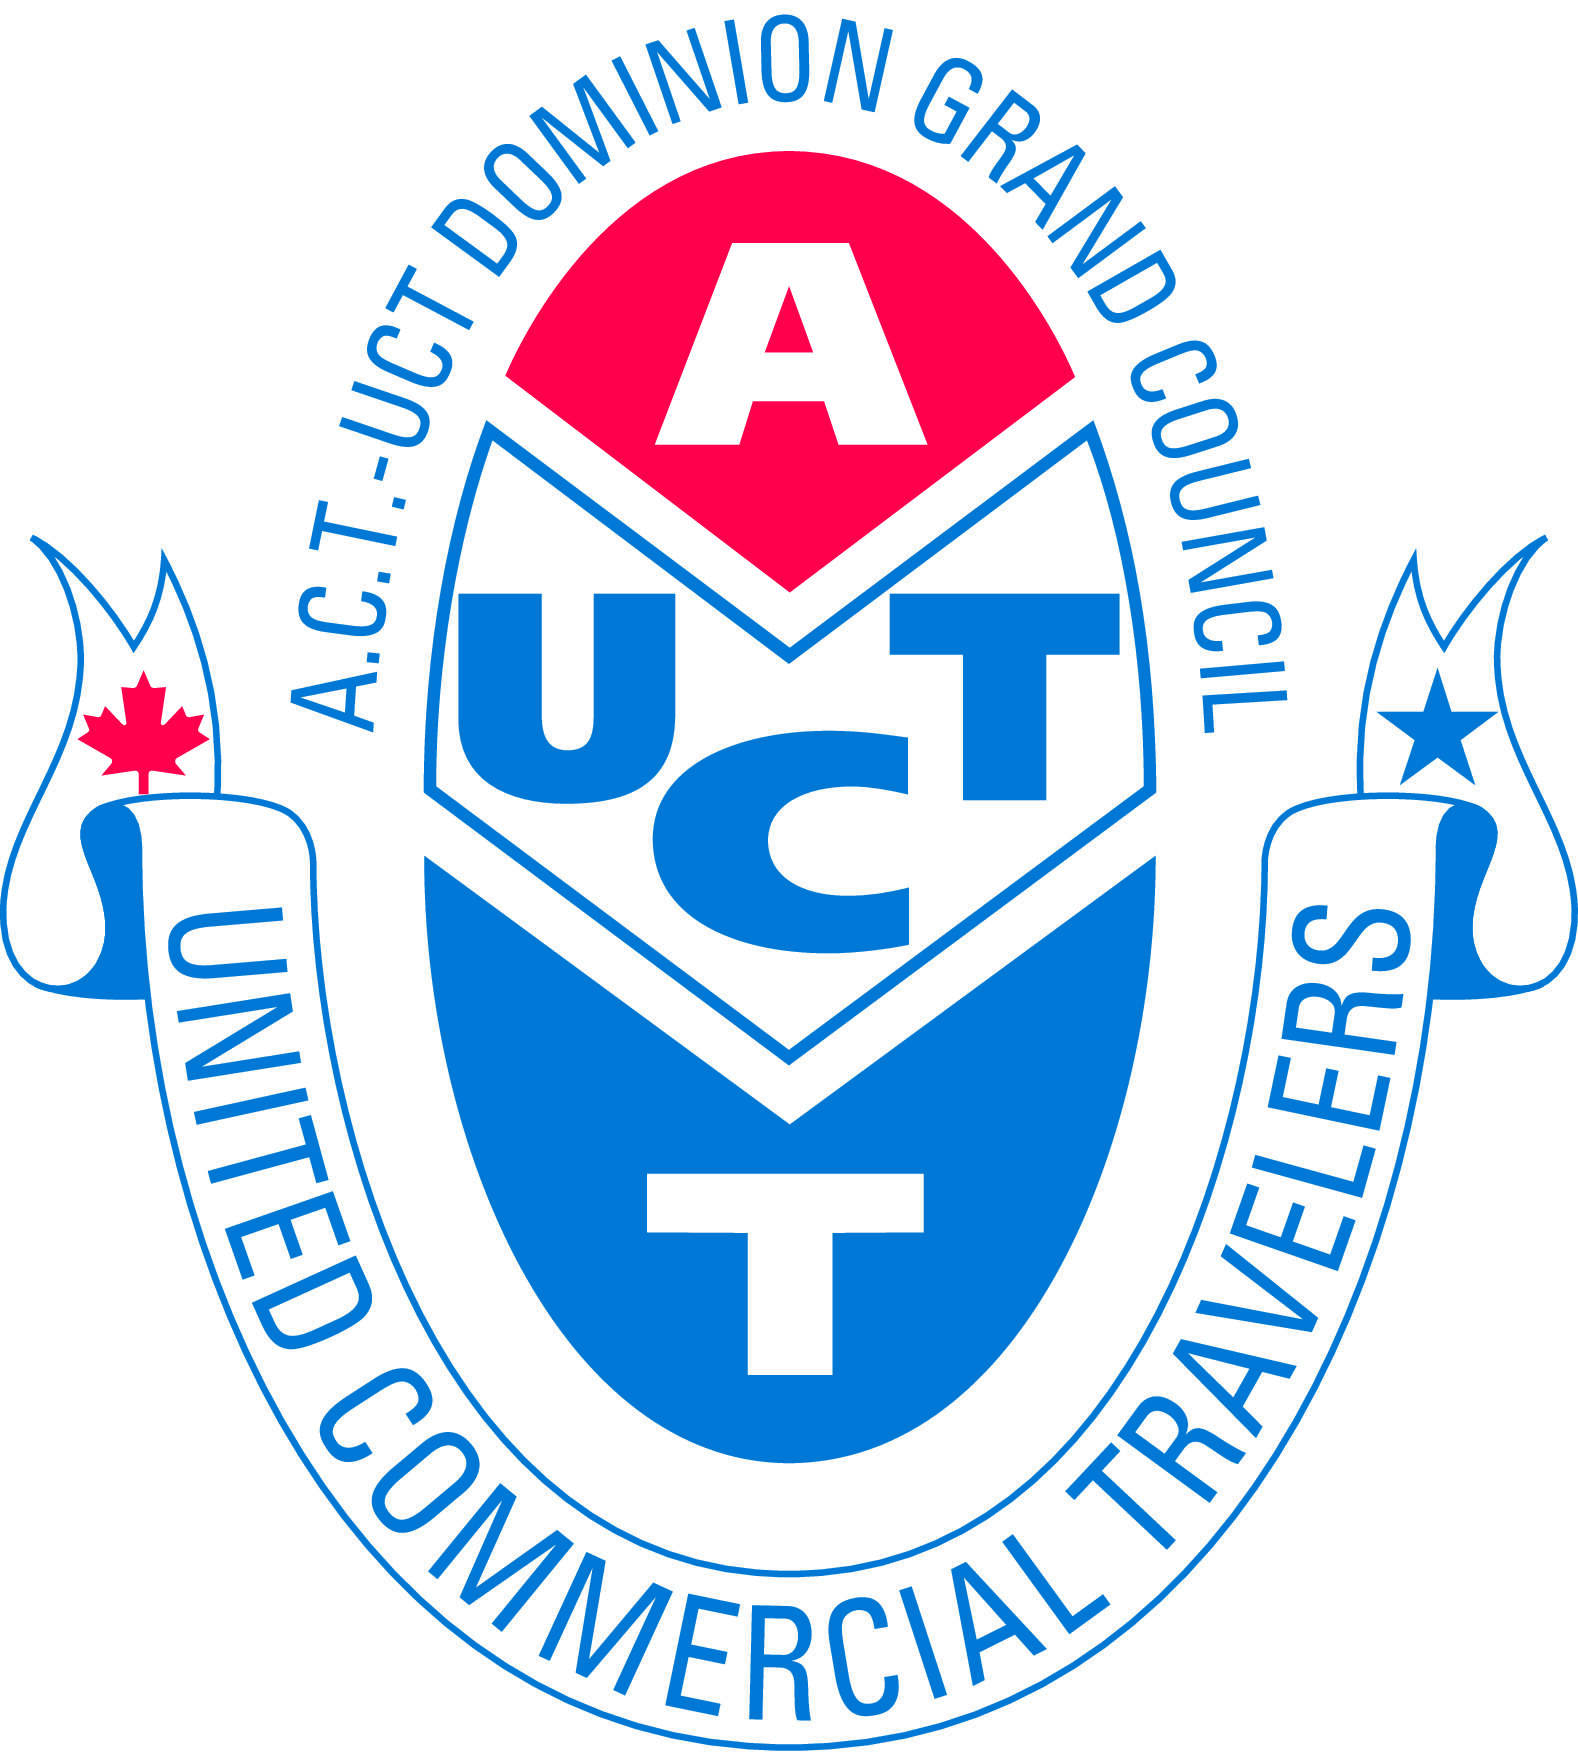 ACT UCT